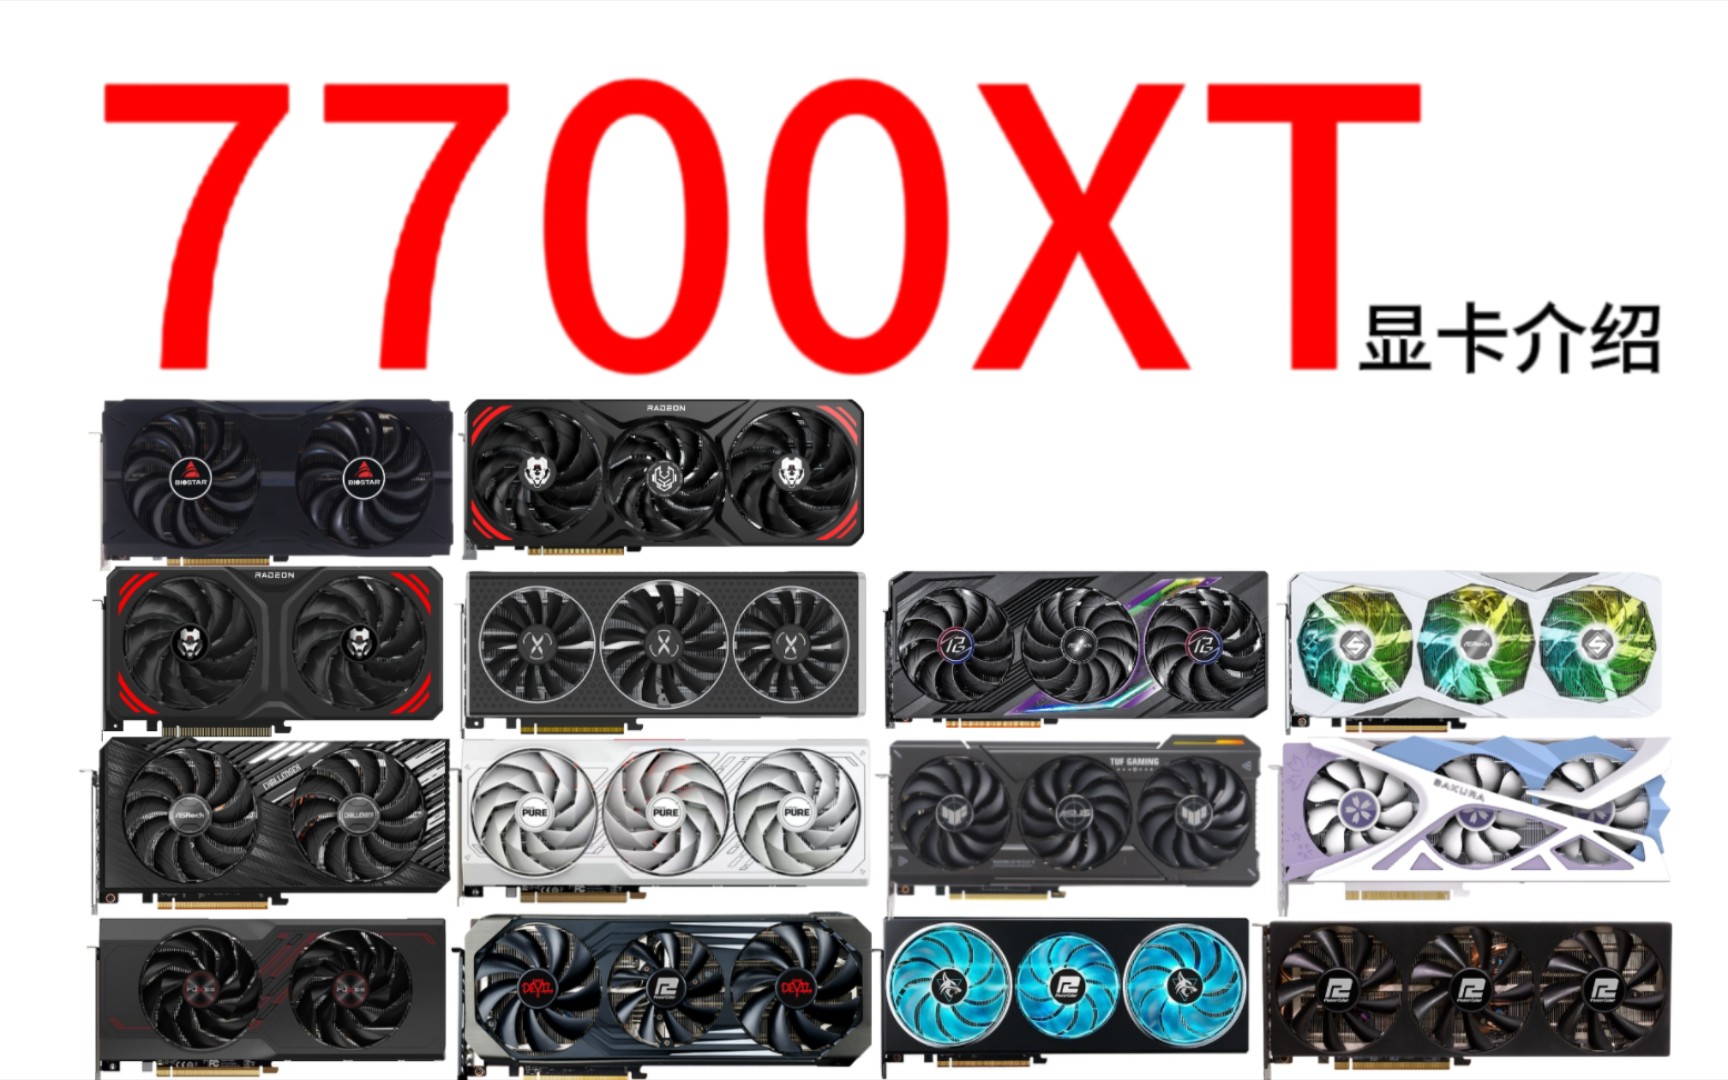 AMD7700XT显卡介绍